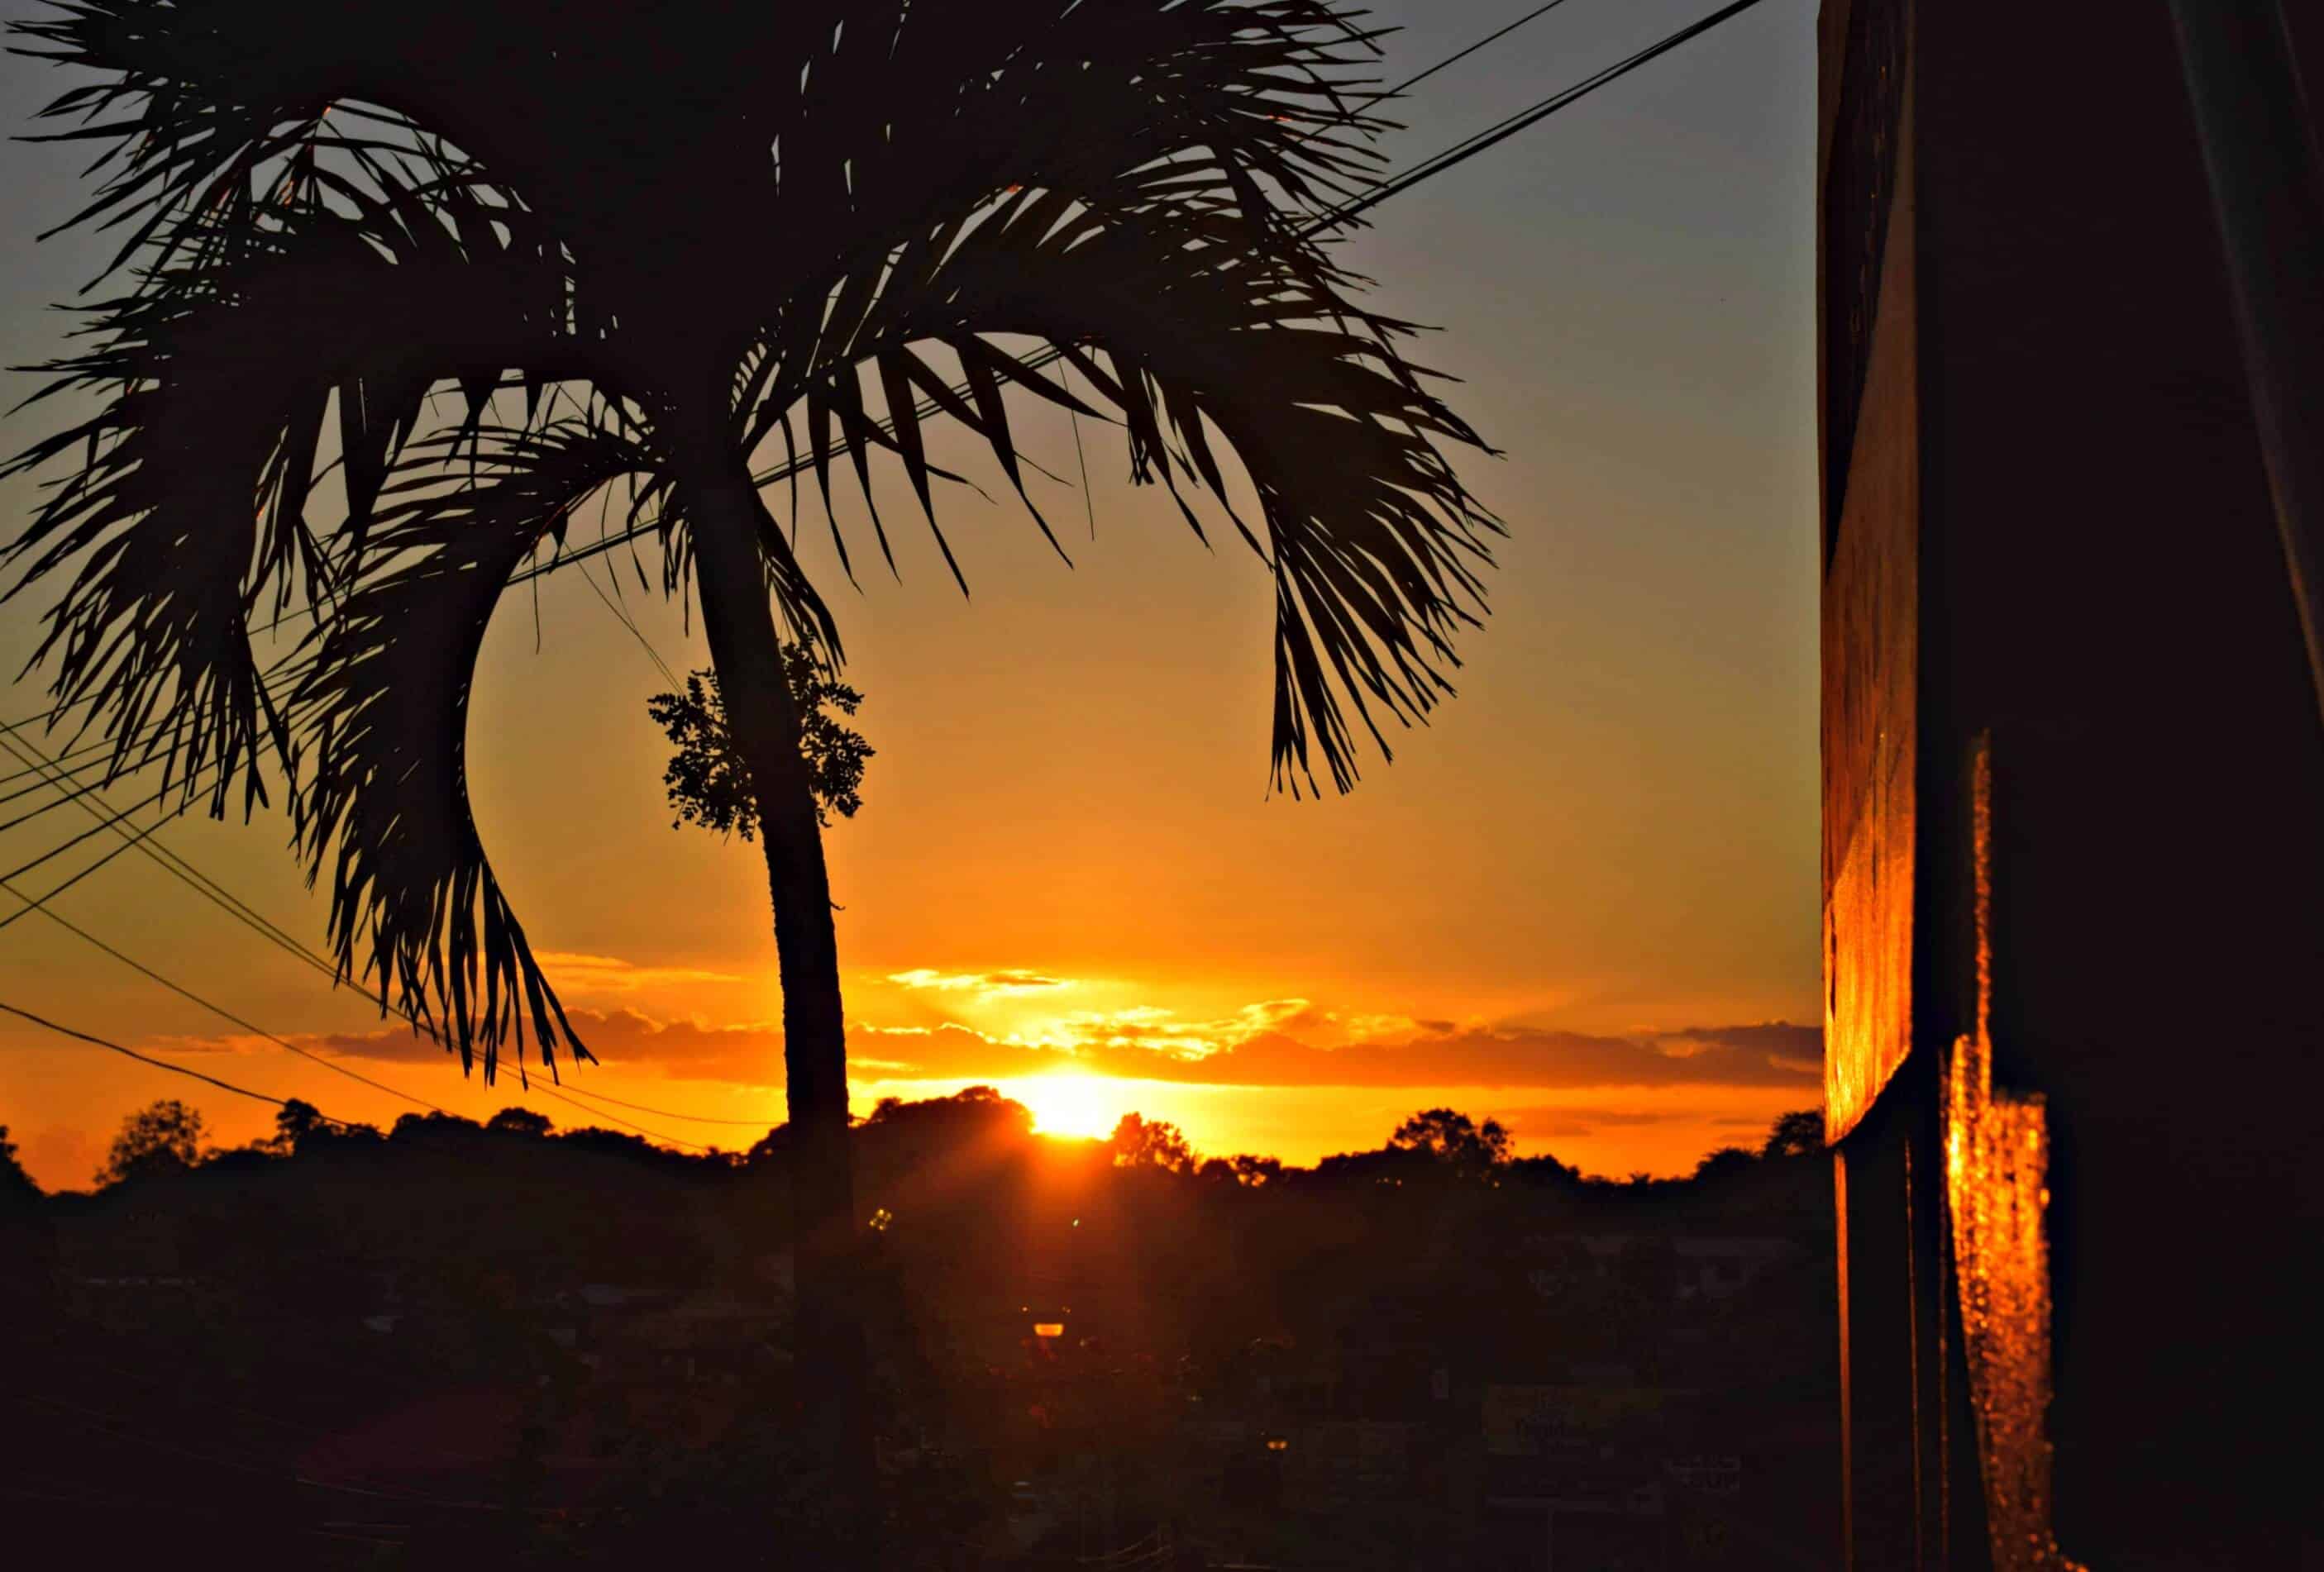 Arima Sunset, Trinidad